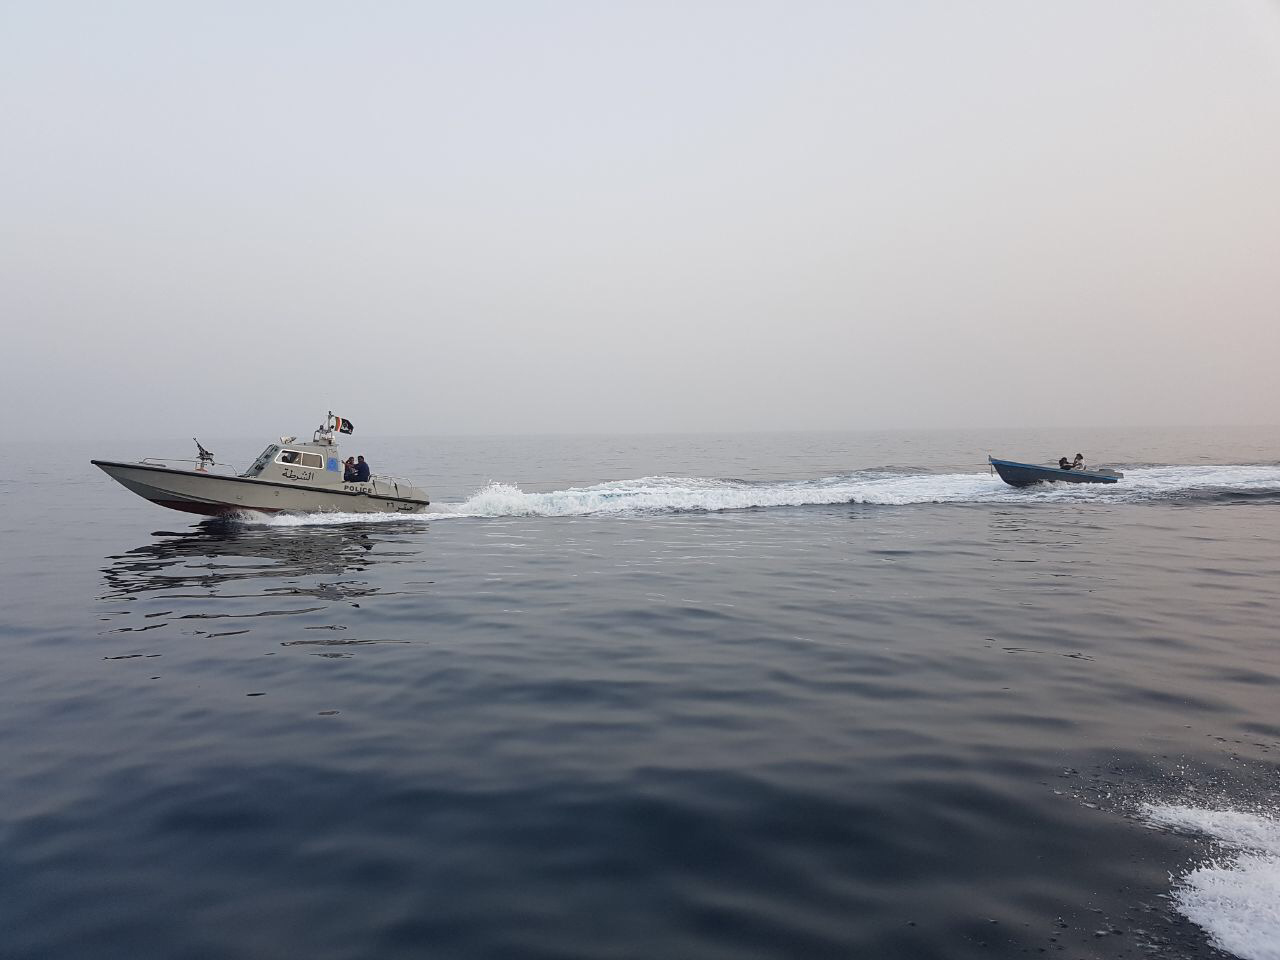 شرطة خفر السواحل تنفذ 18 عملية بحث وإنقاذ خلال شهر أغسطس